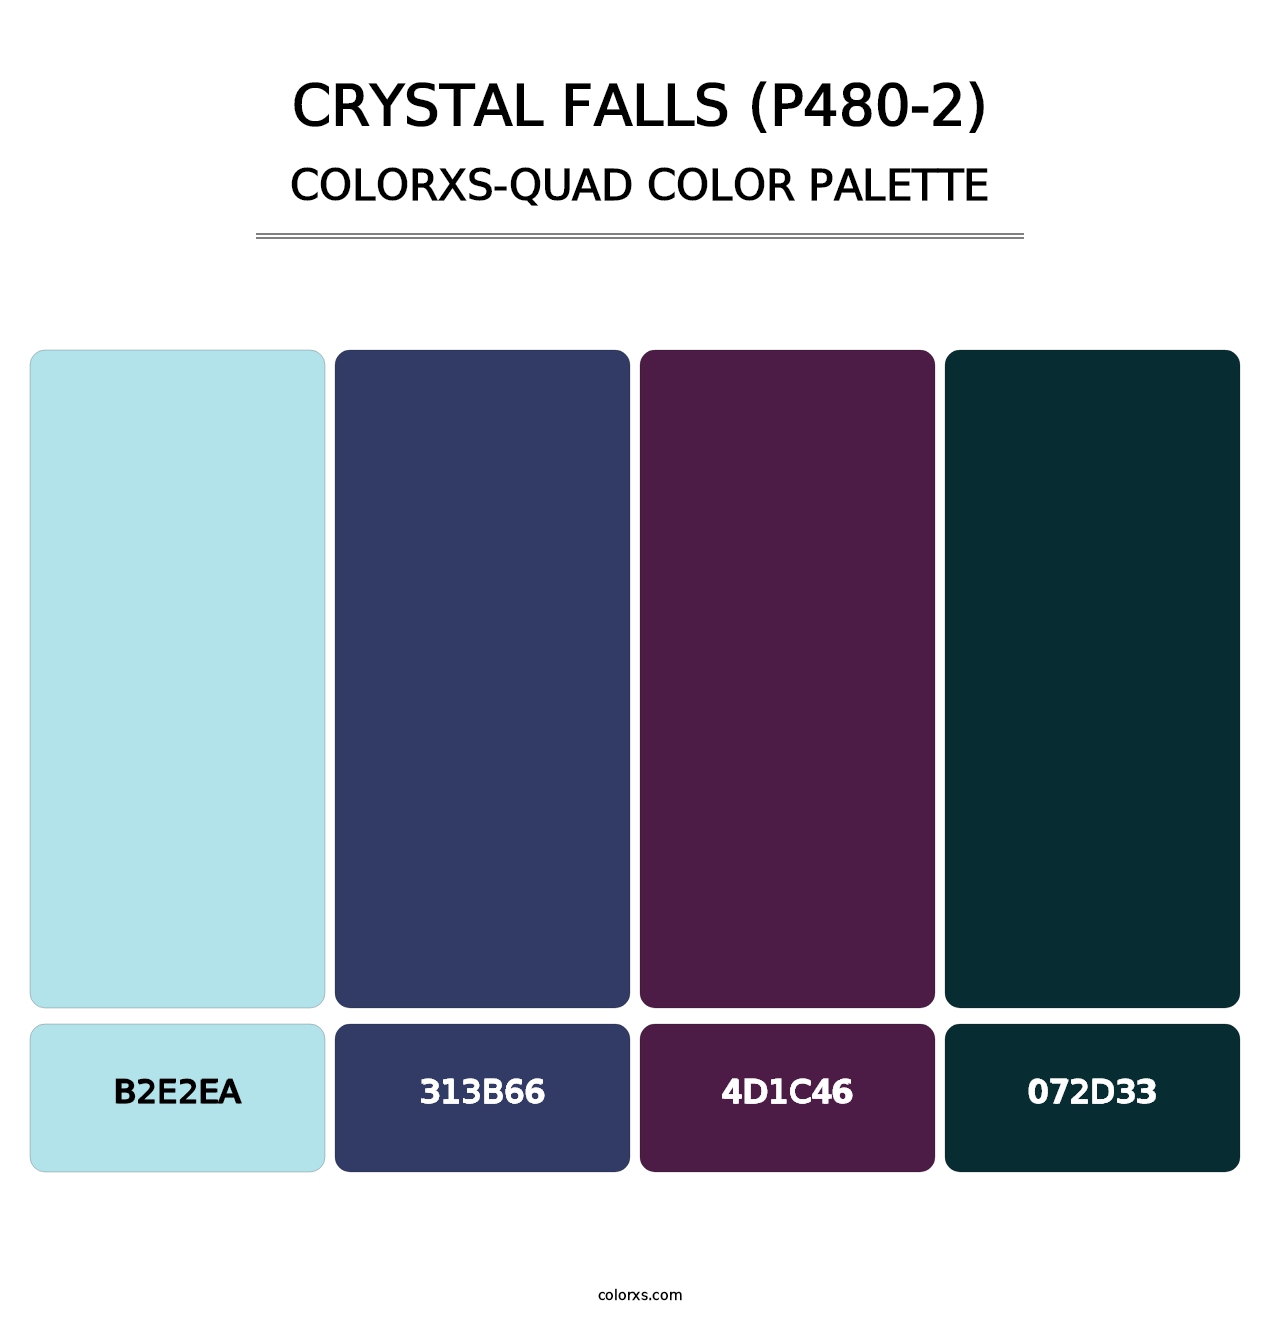 Crystal Falls (P480-2) - Colorxs Quad Palette